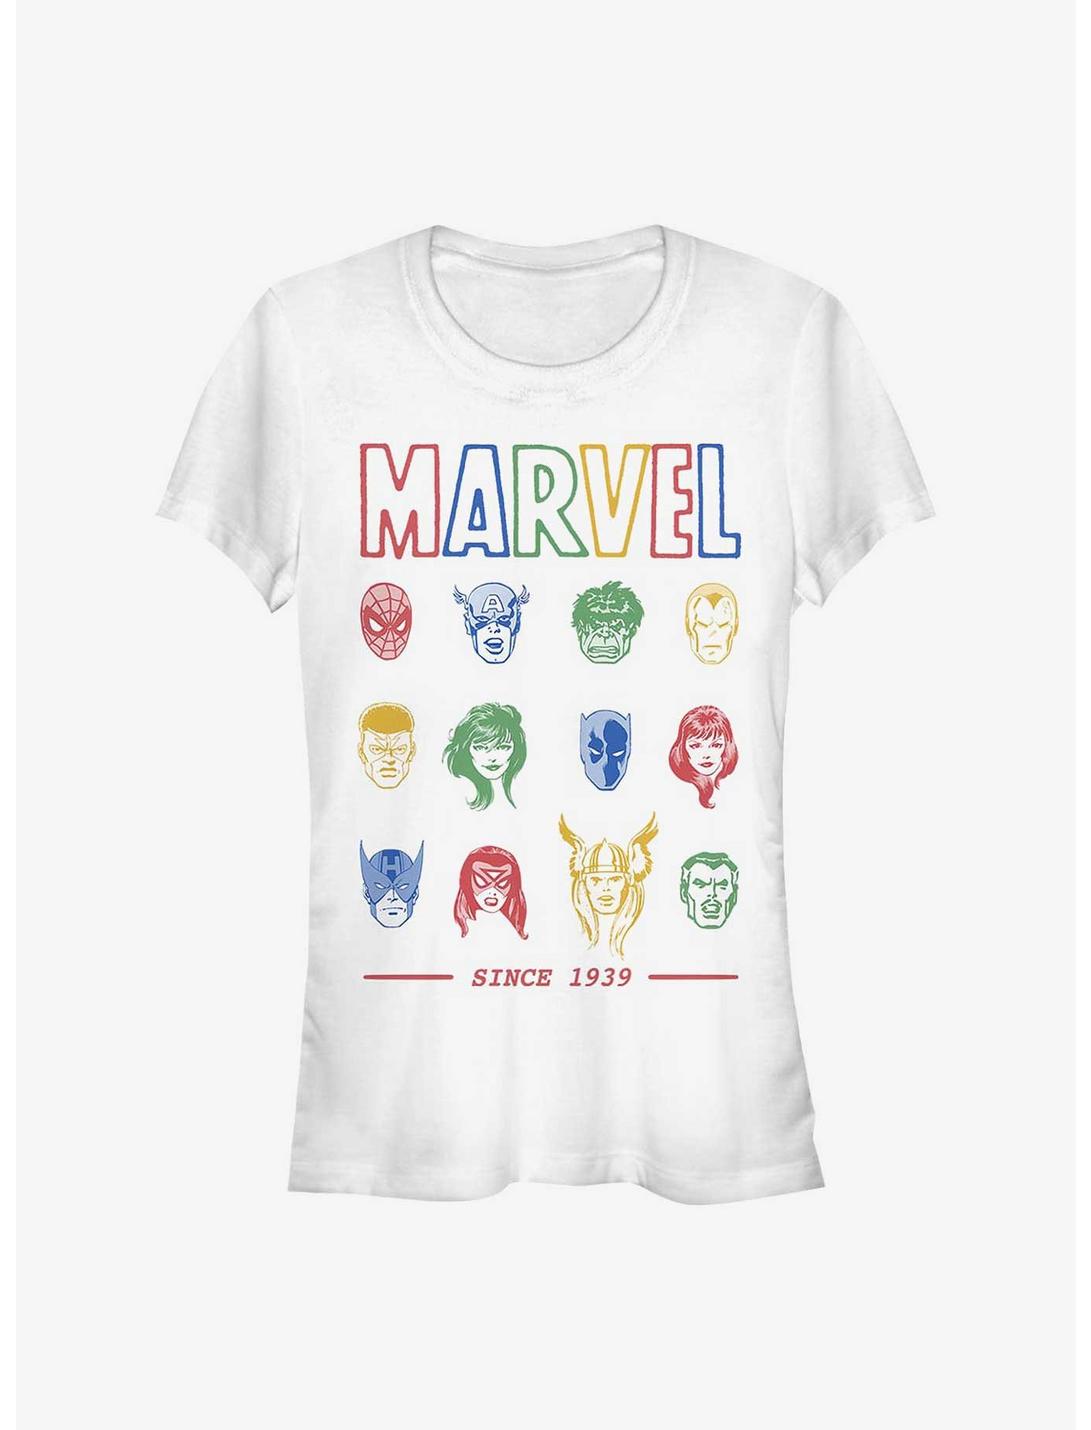 Marvel Avengers Faces Since 1939 Girls T-Shirt, WHITE, hi-res